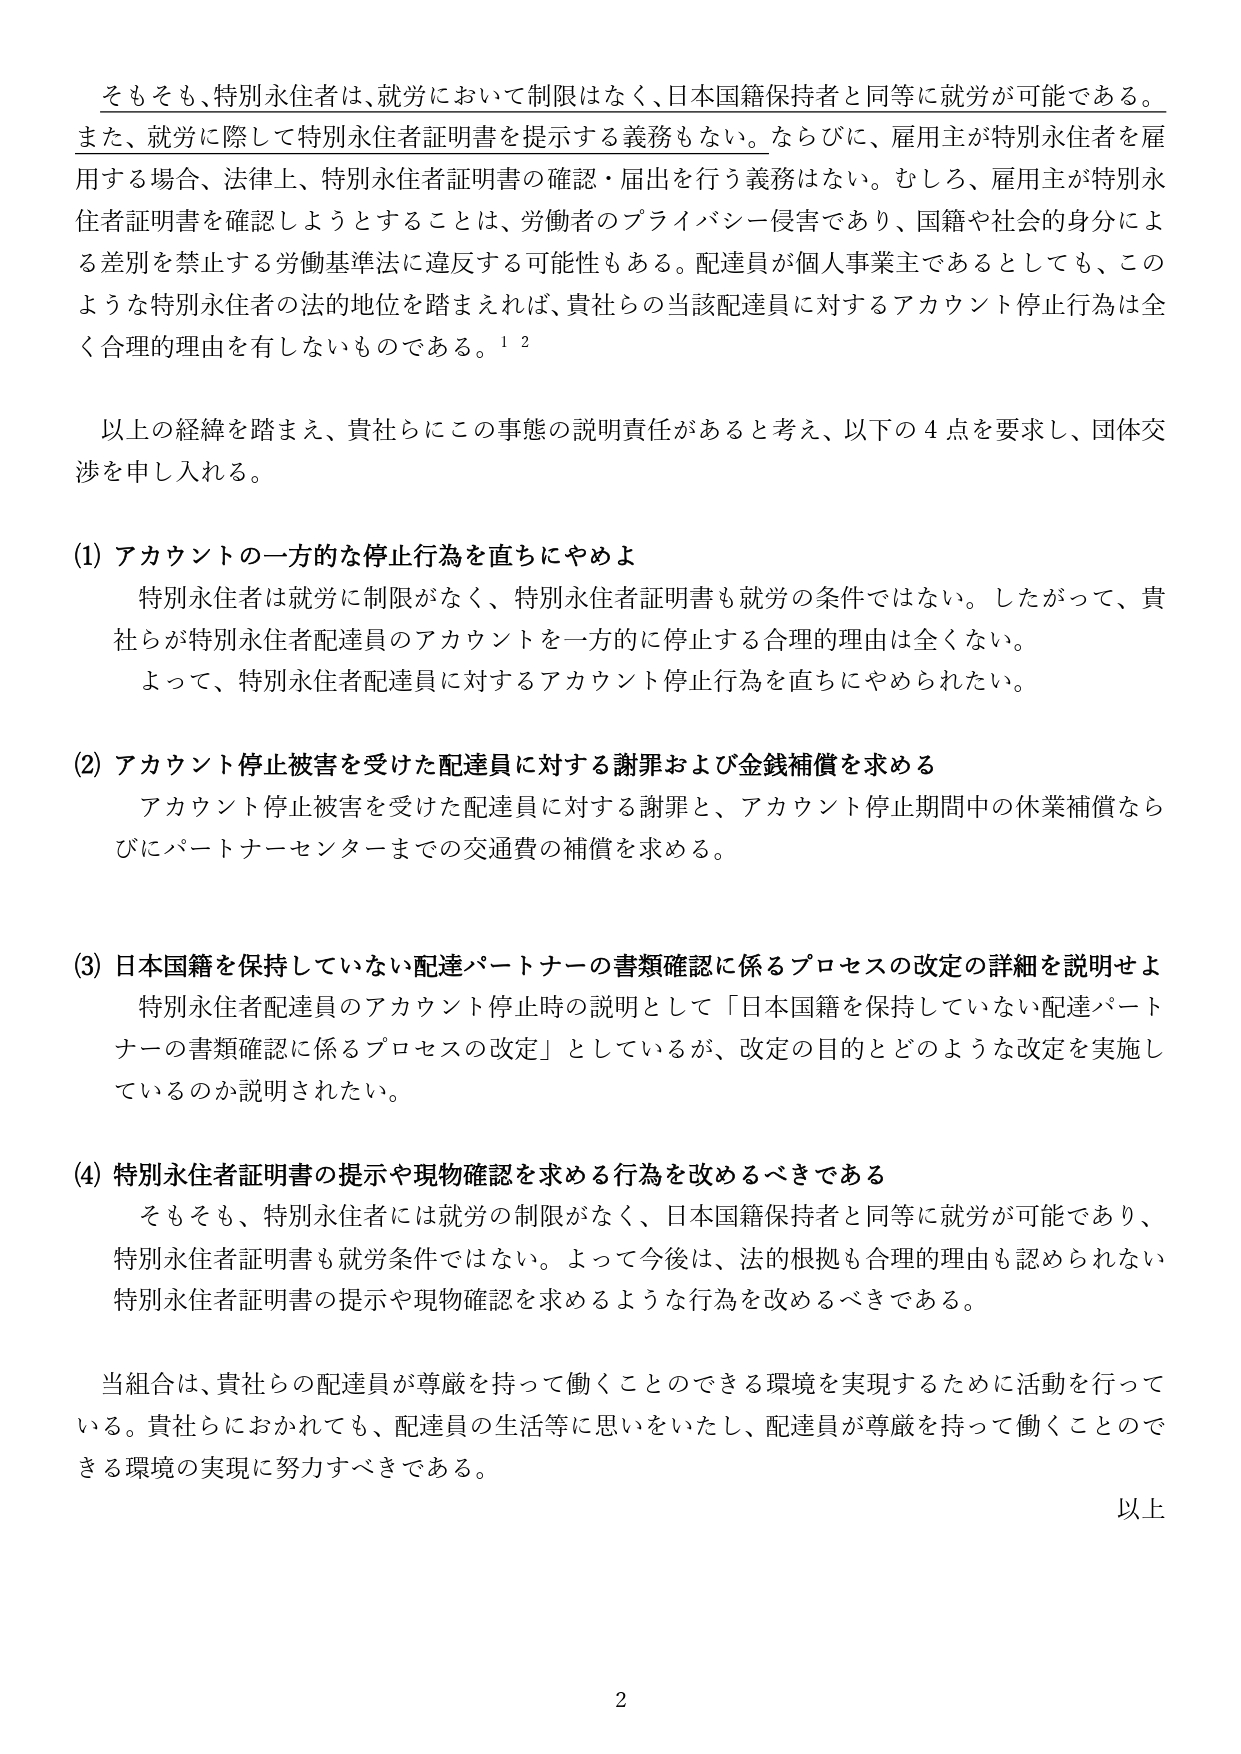 【記者会見】9/1の特別永住者に対するアカウントの一方的停止に対する抗議声明